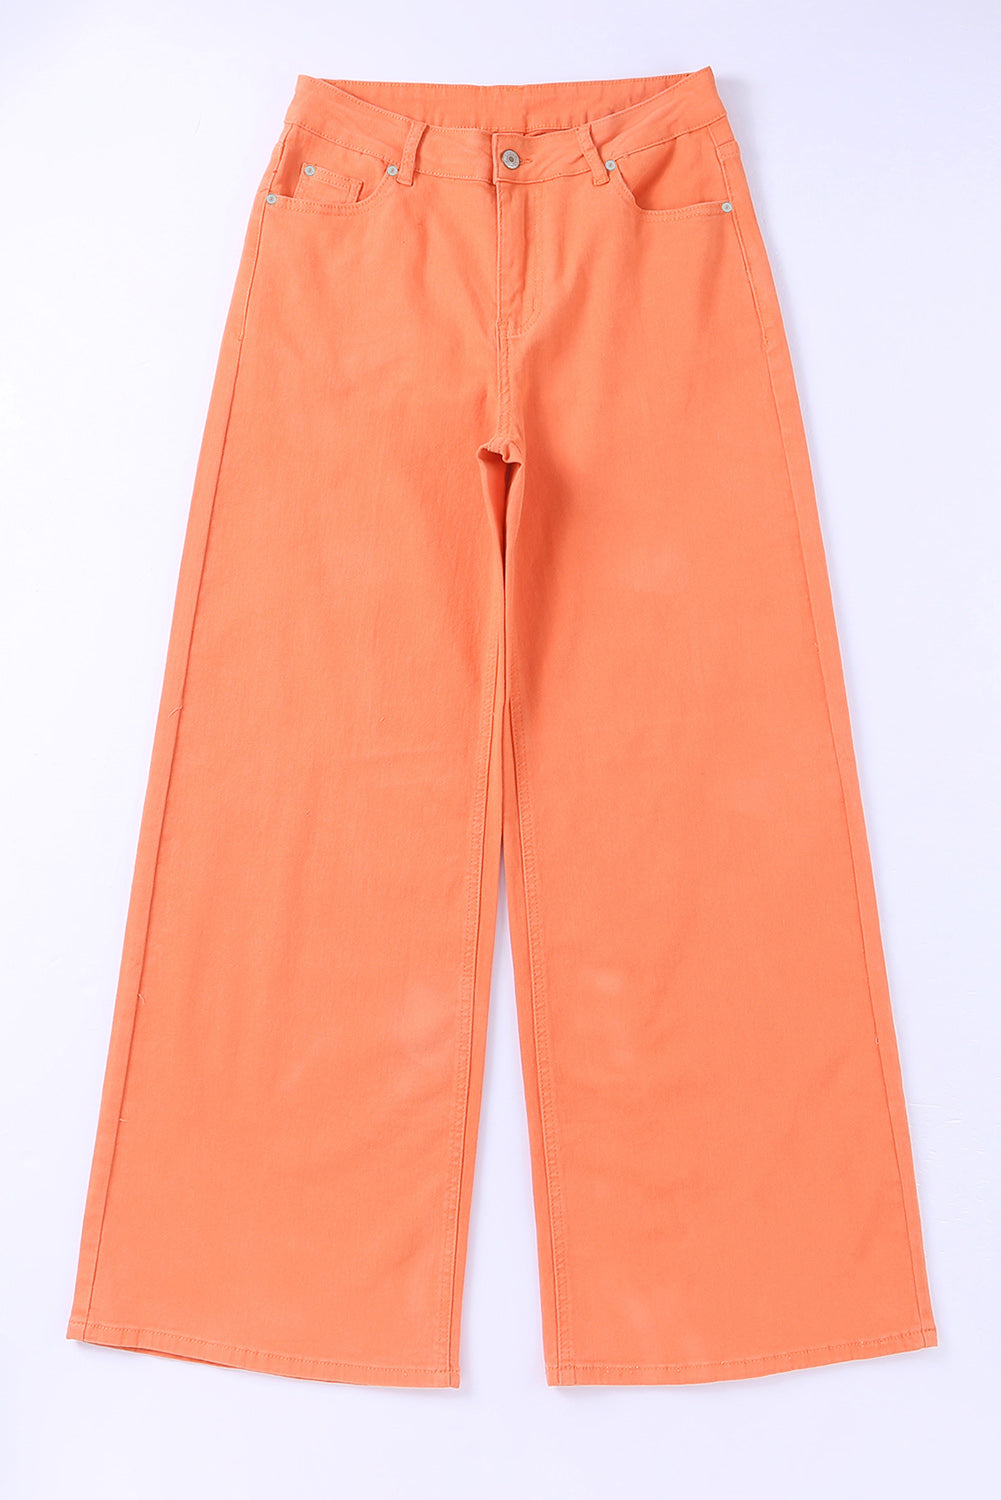 Jeans a gamba larga a vita alta con lavaggio acido arancione